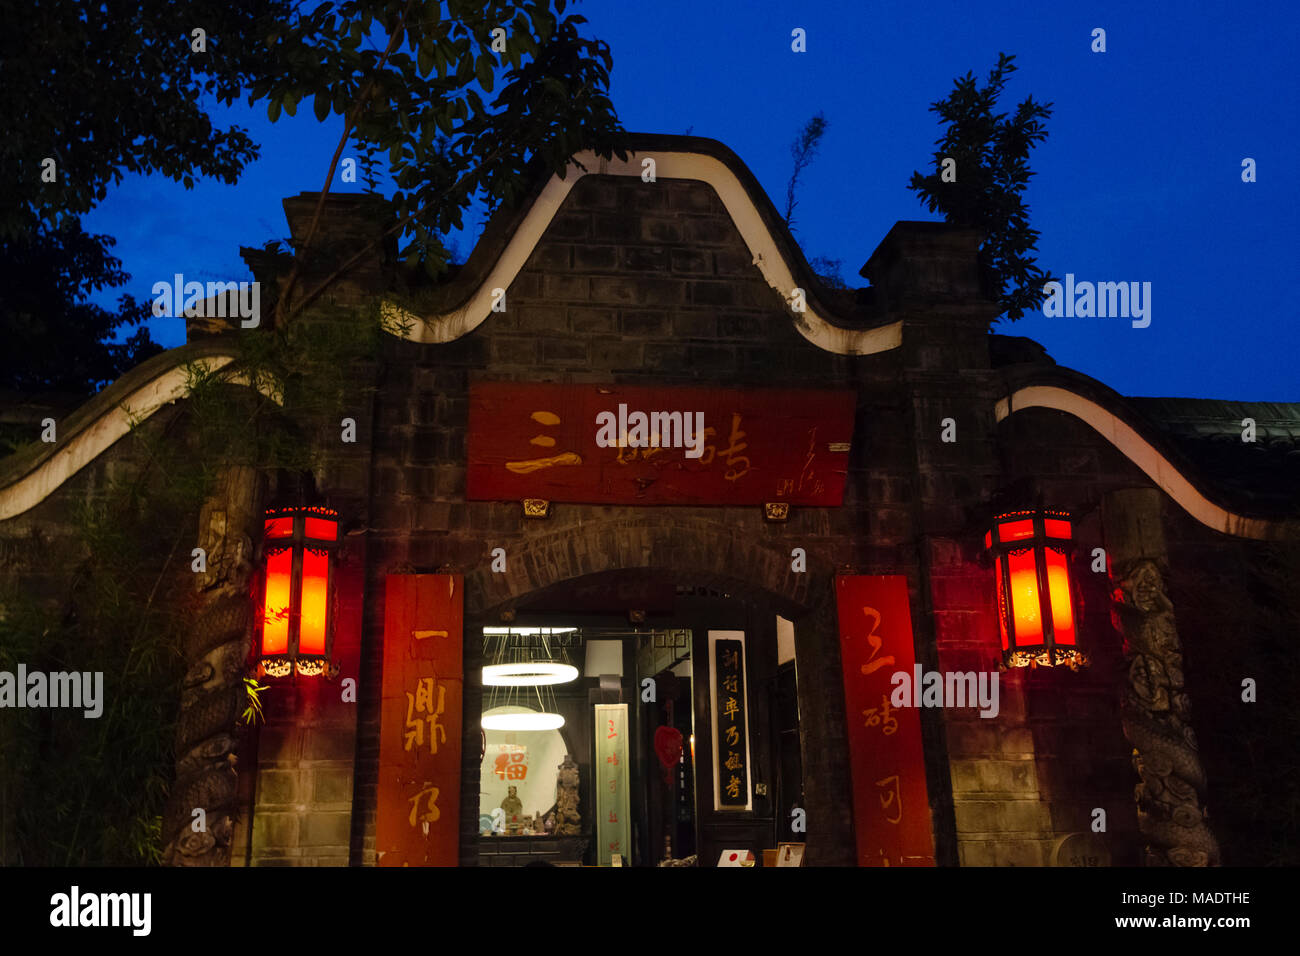 Vue de la nuit de maisons traditionnelles en large et des ruelles étroites, Chengdu, Sichuan, Chine Banque D'Images